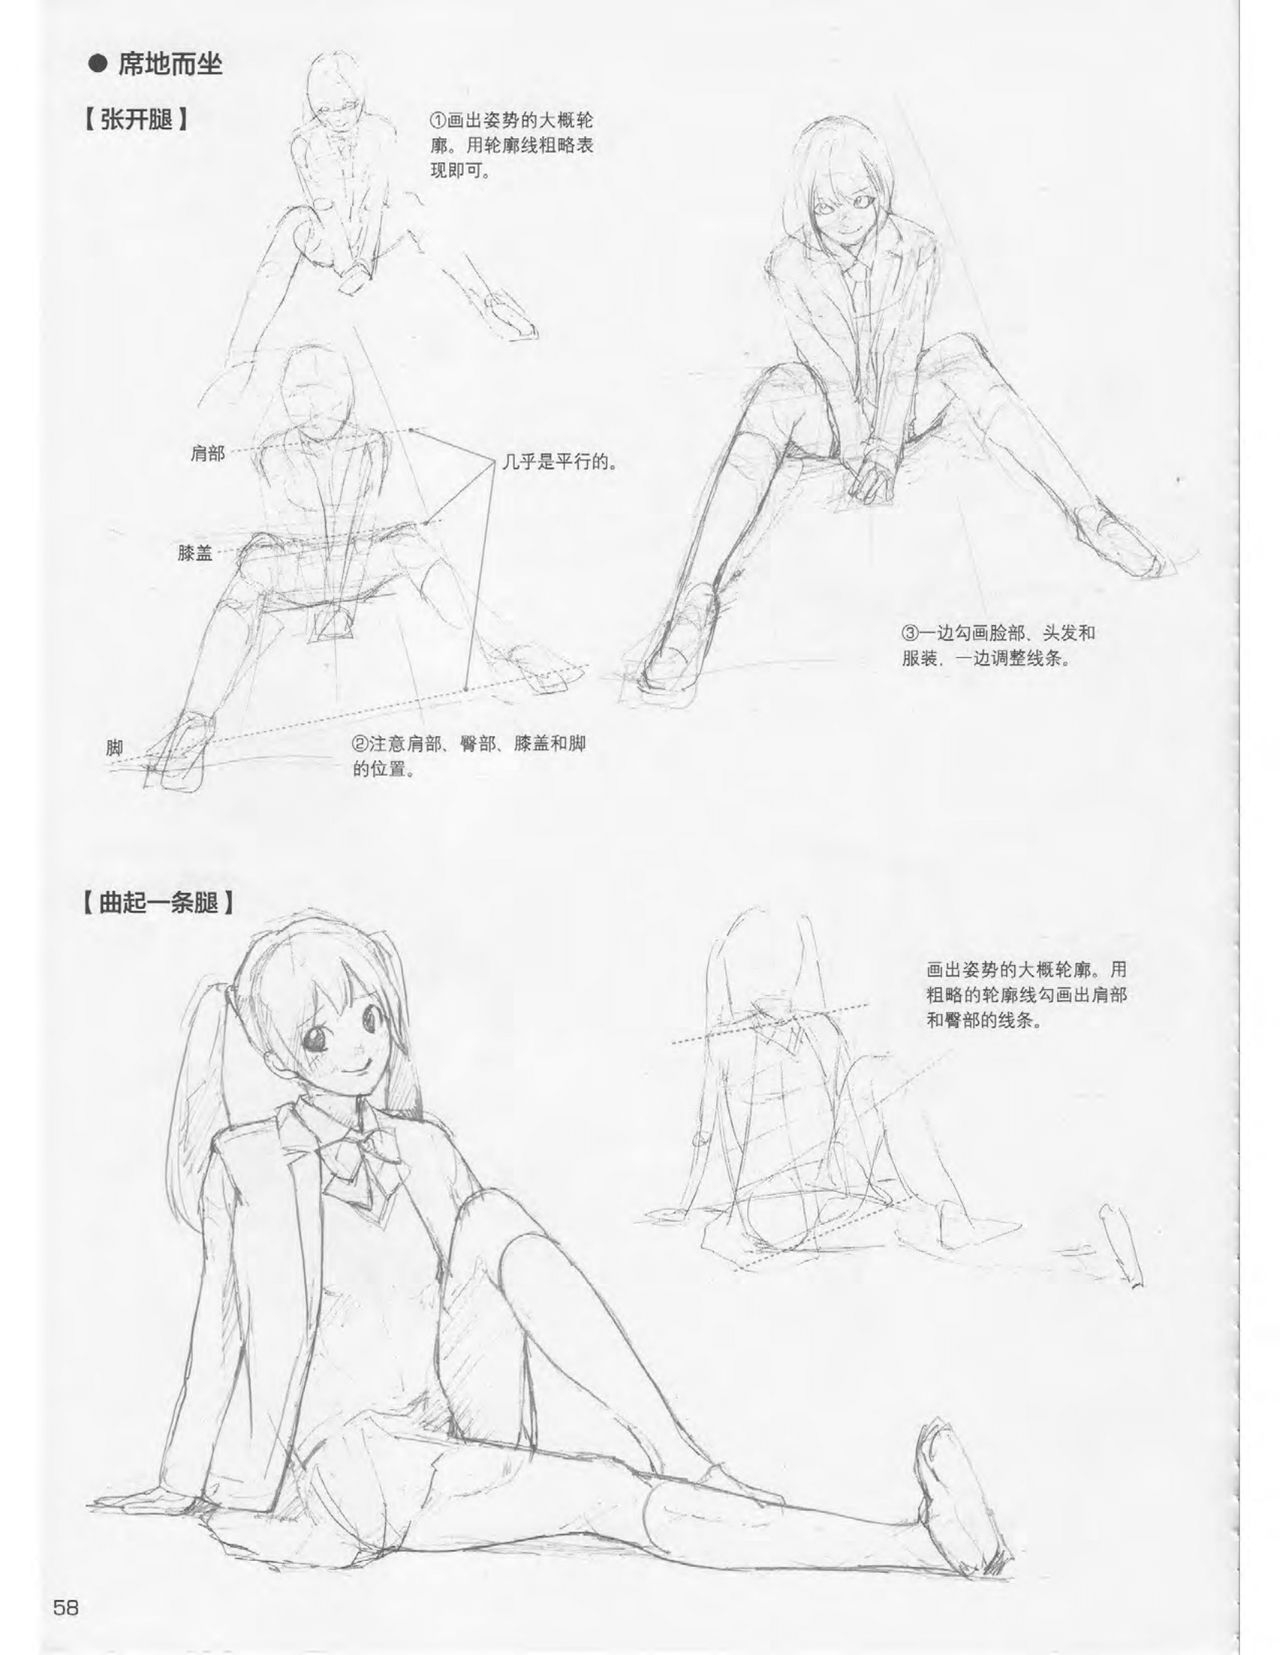 Japanese Manga Master Lecture 3: Lin Akira and Kakumaru Maru Talk About Glamorous Character Modeling 58